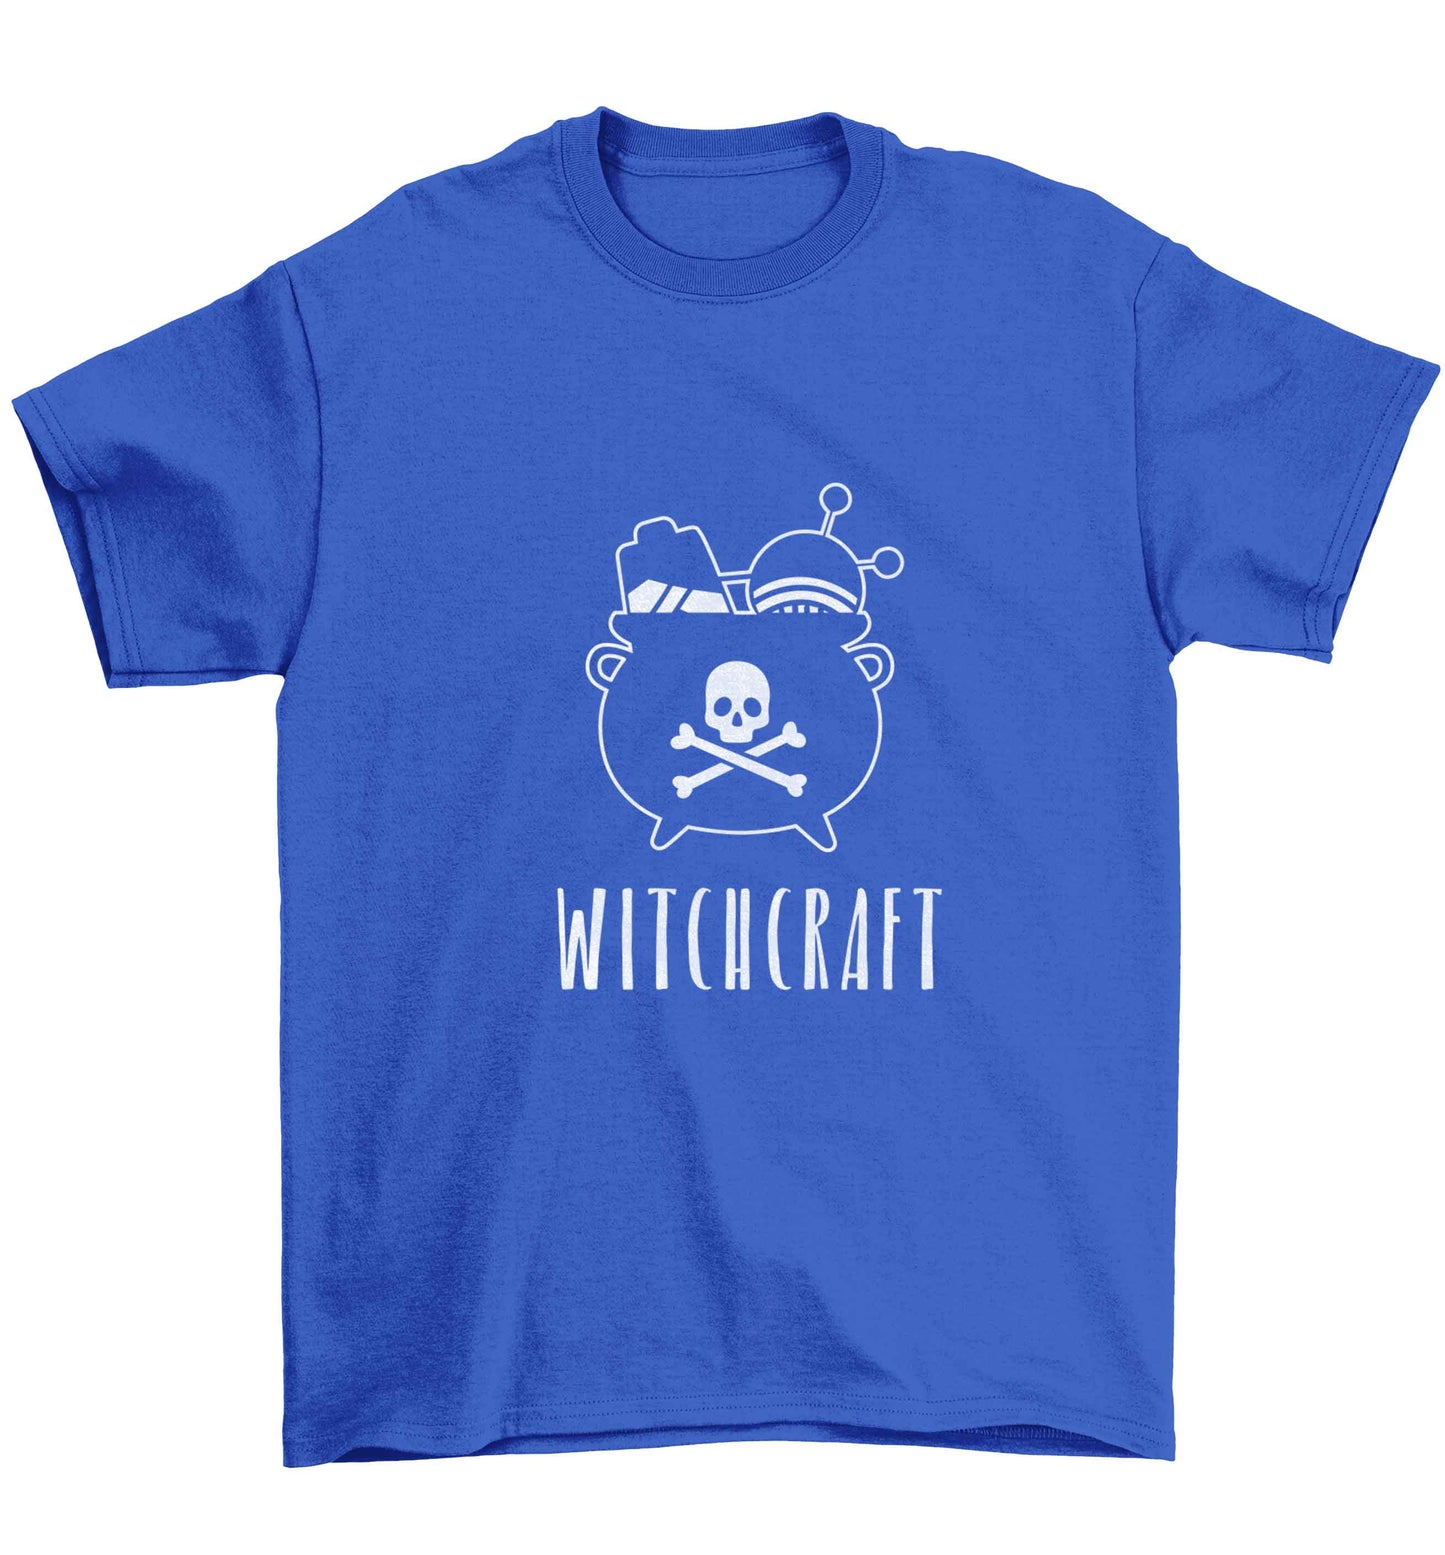 Witchcraft Children's blue Tshirt 12-13 Years